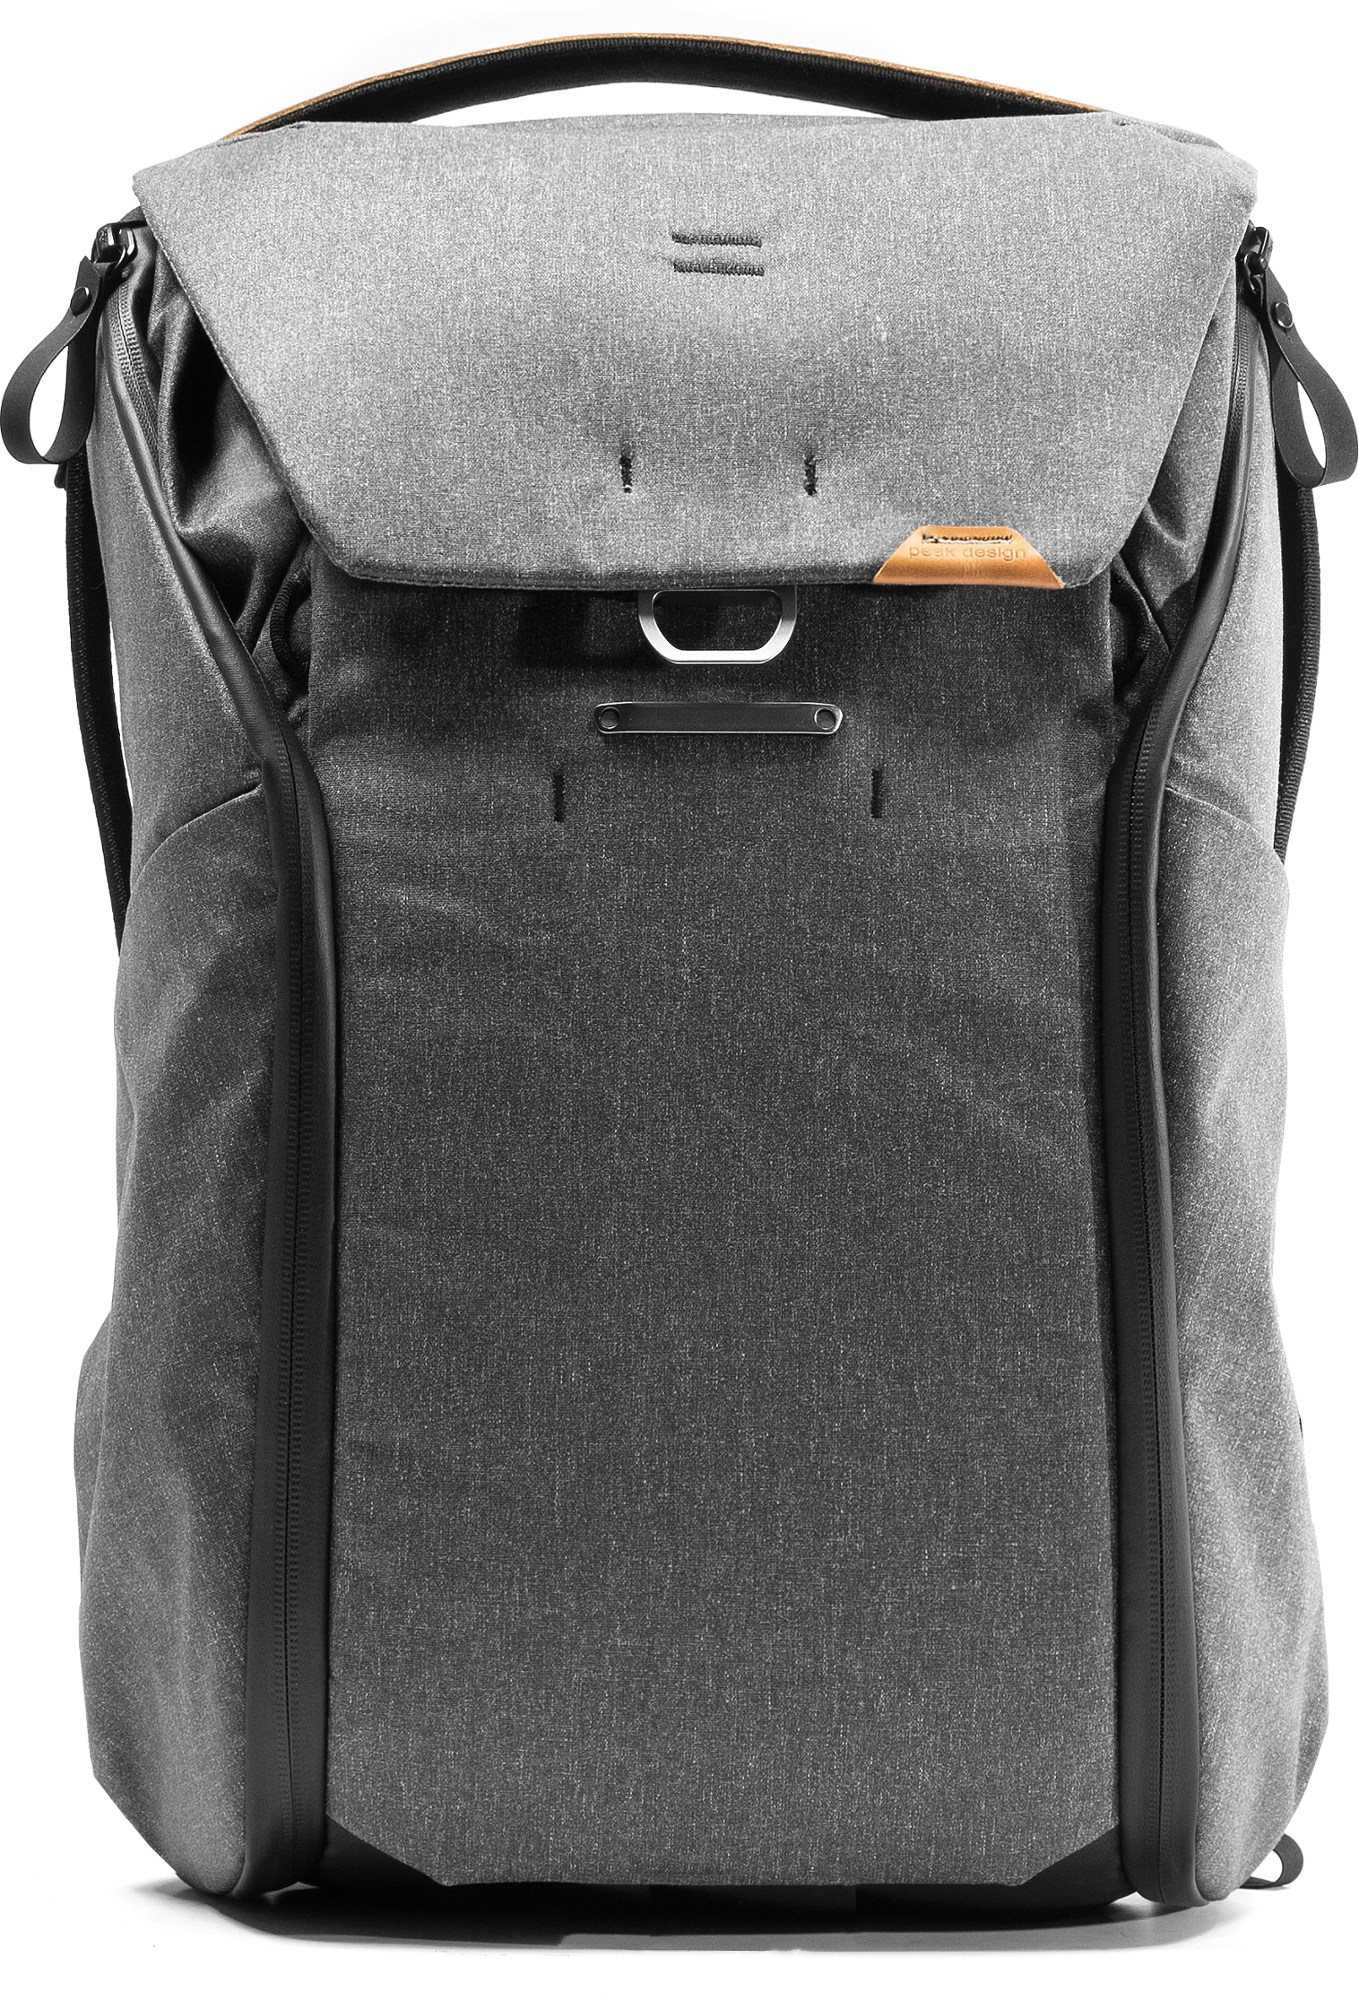 Рюкзак на каждый день V2 30л Peak Design, серый рюкзак peak design the everyday backpack 20l v2 0 midnight